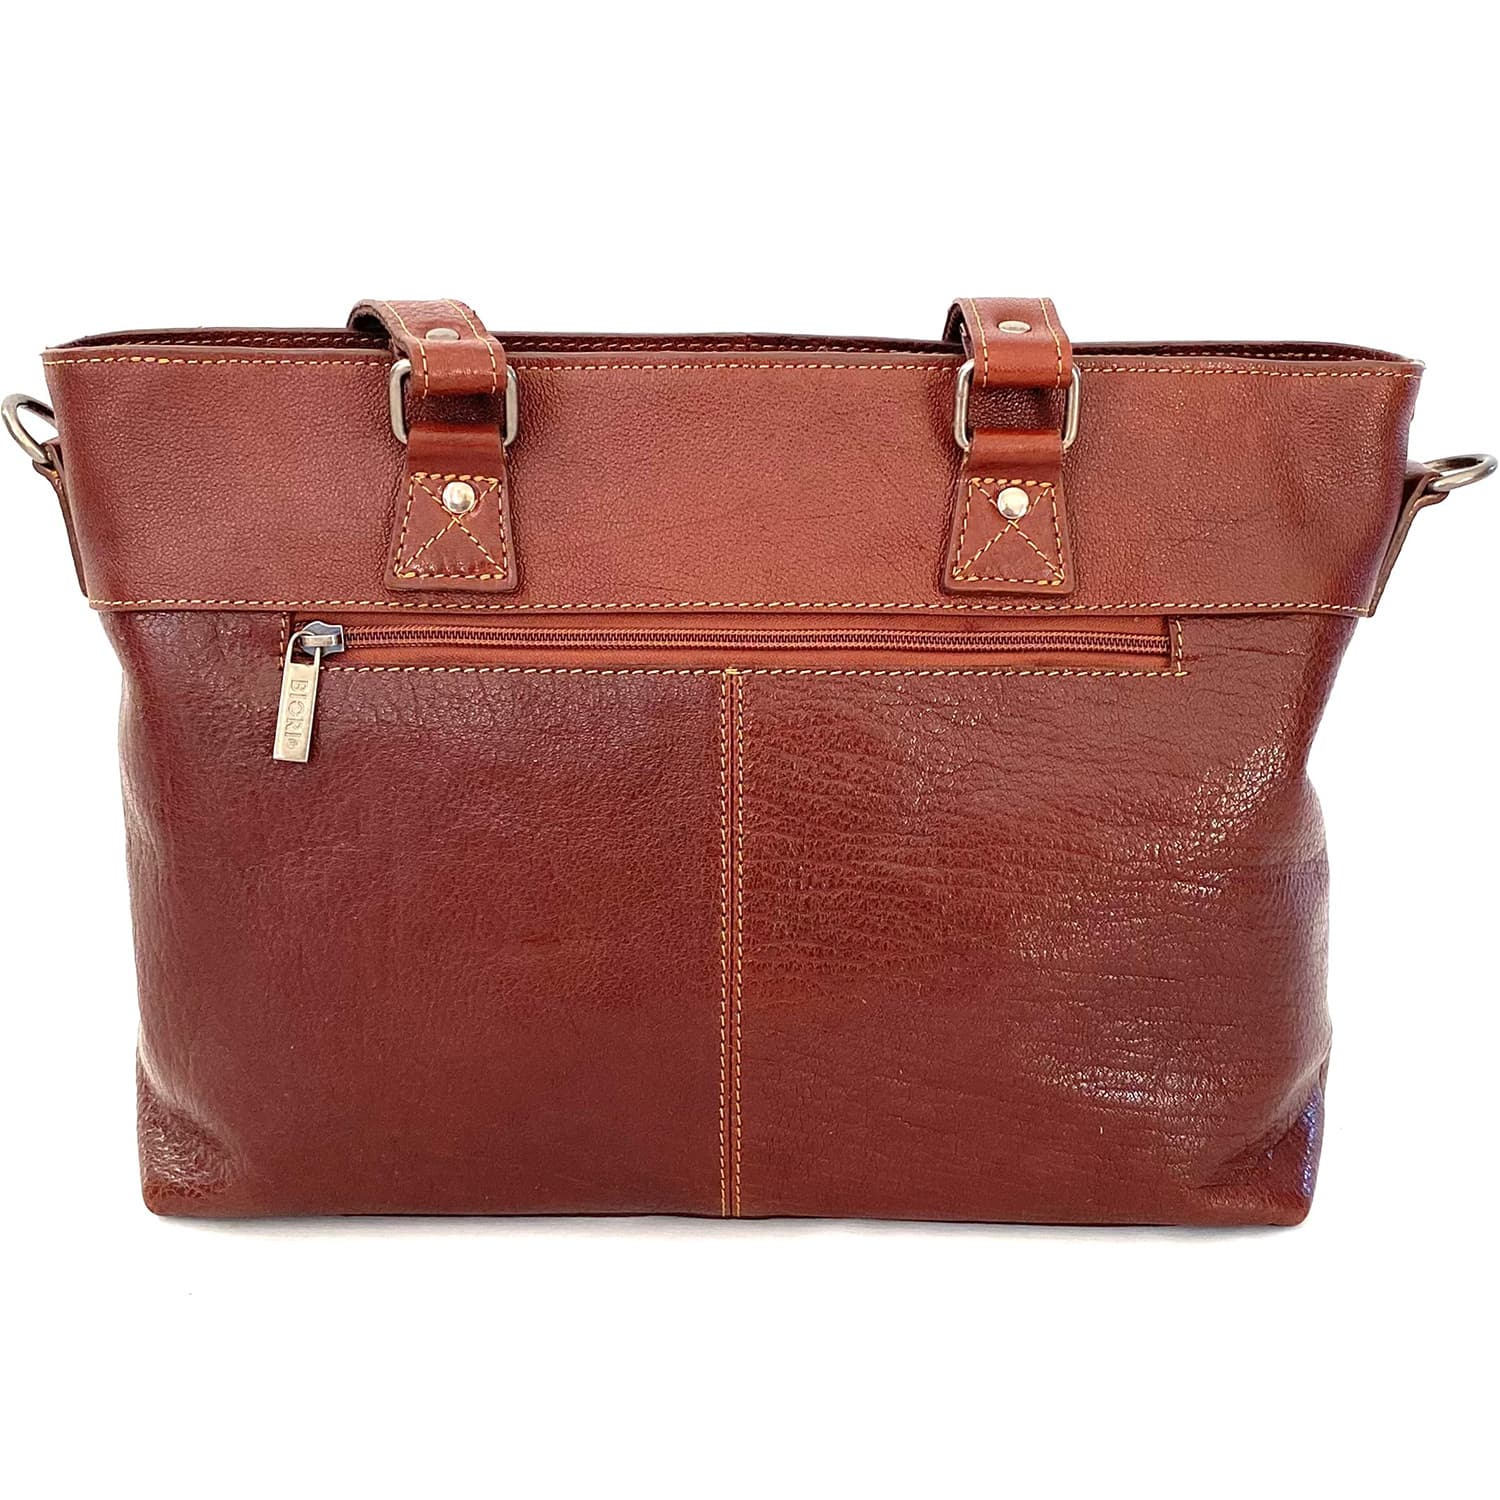 Biori Laptop Handbag 5126 Brown